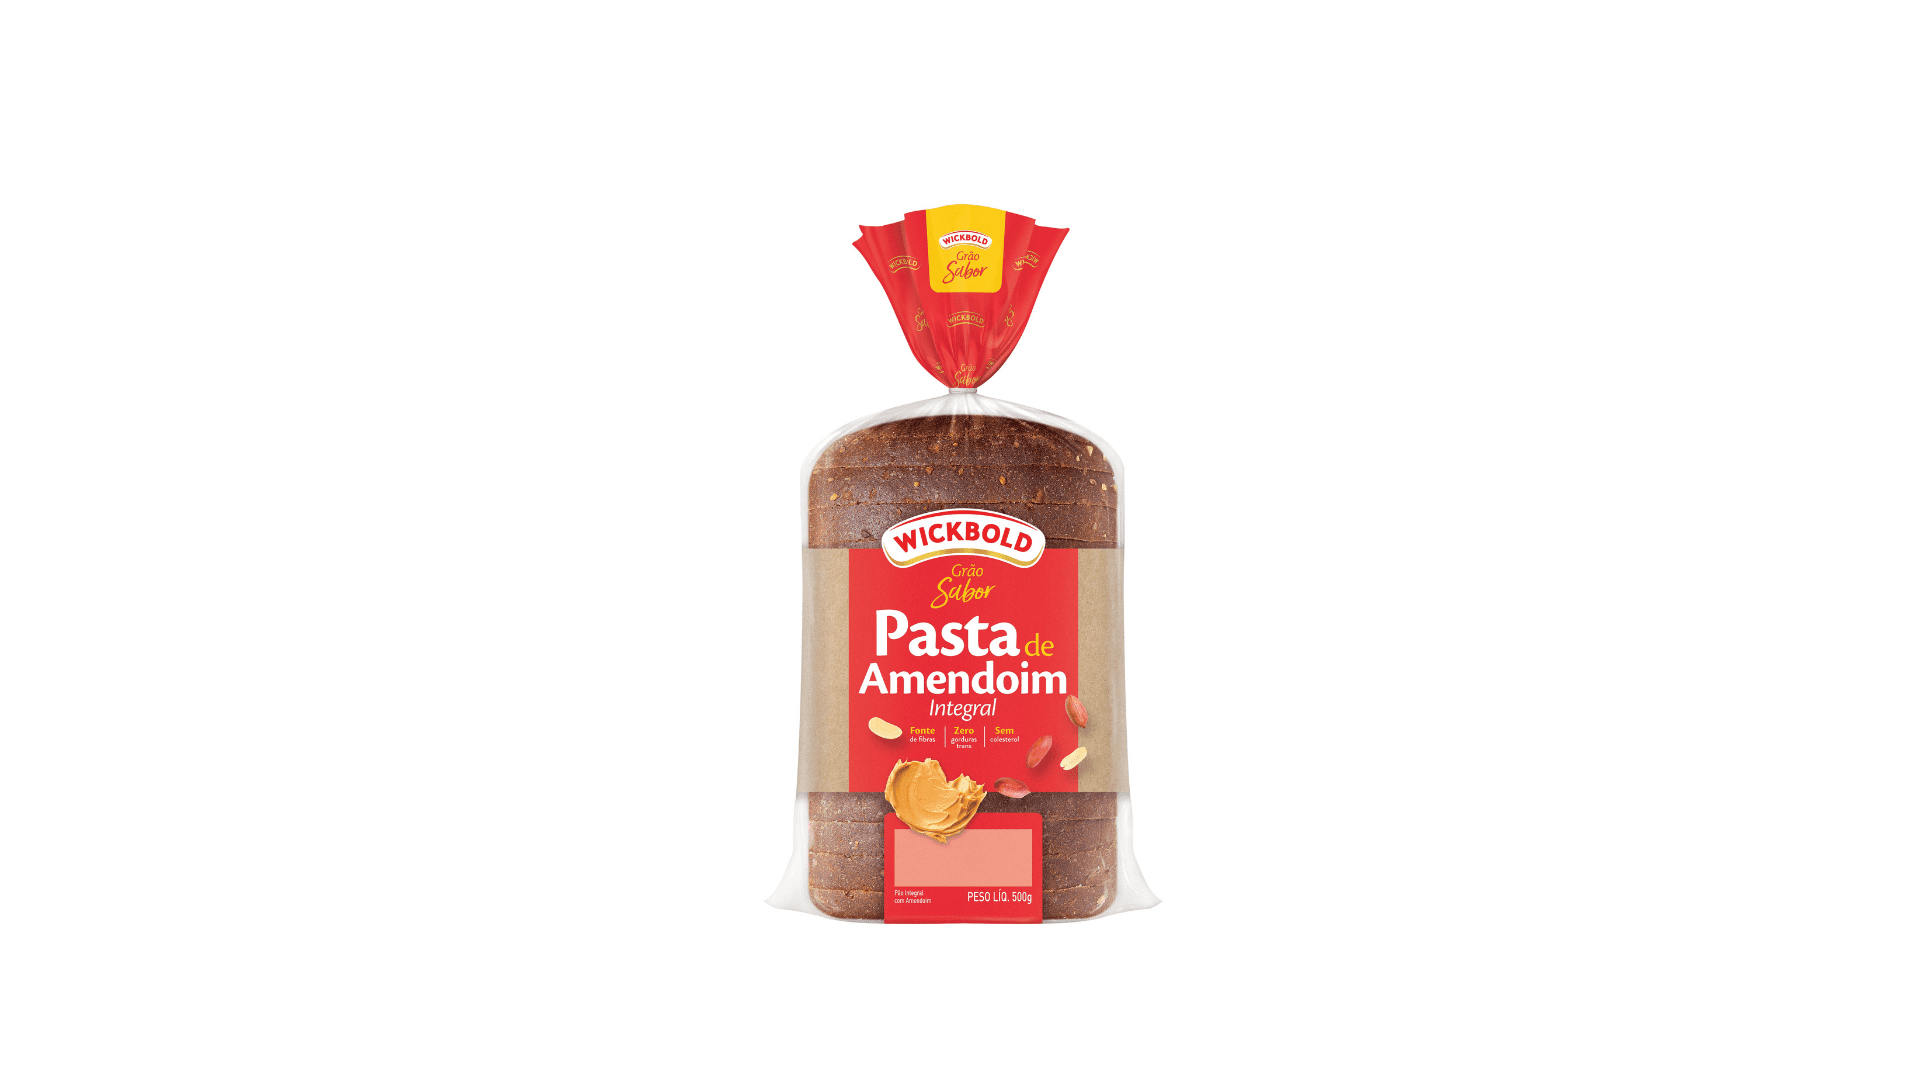 Featured image for “Wickbold apresenta pão integral feito com pasta de amendoim”